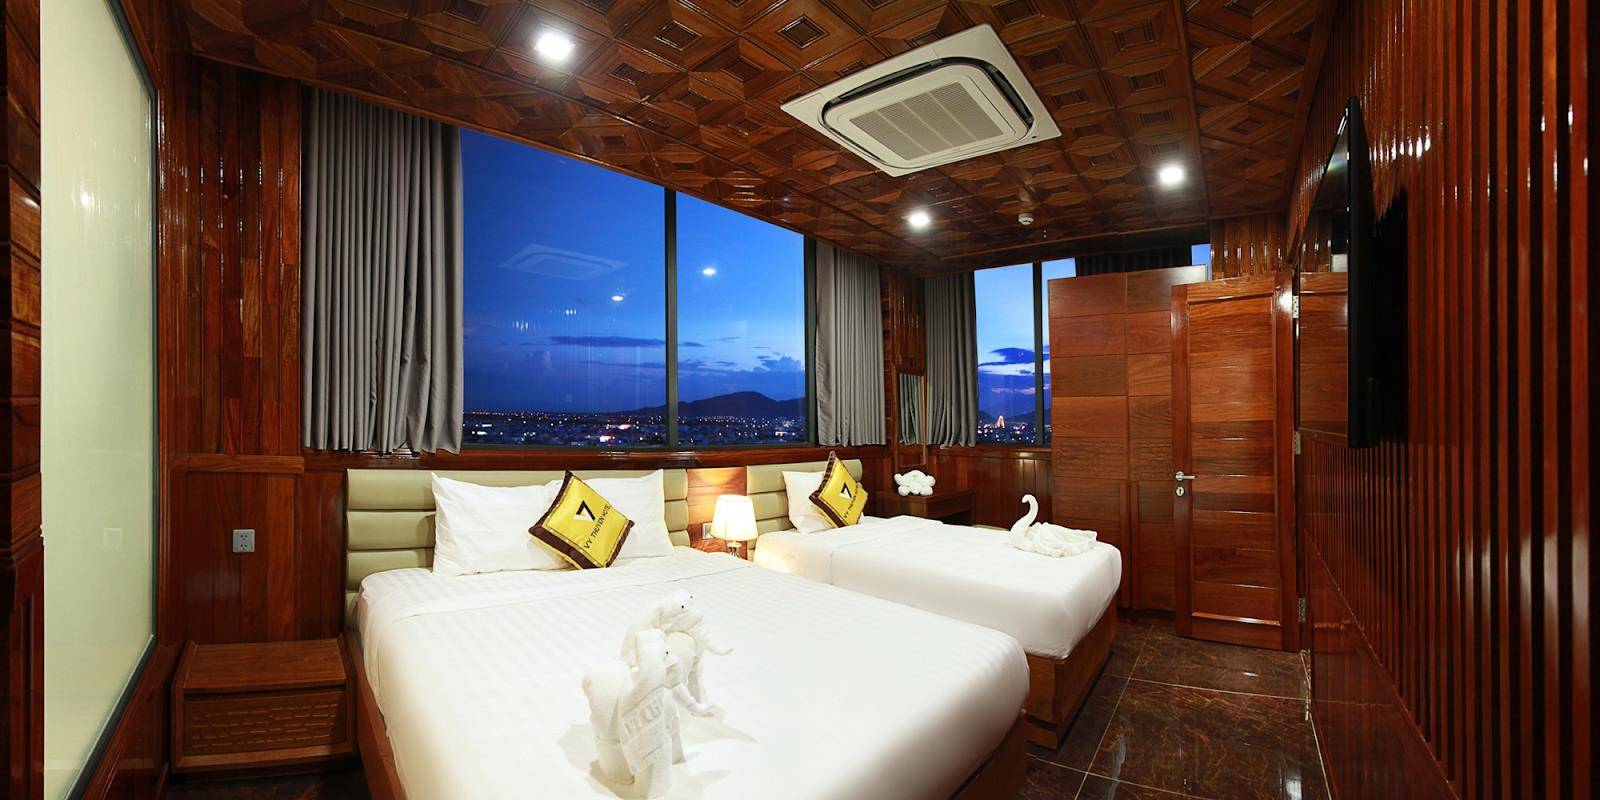 Phòng nghỉ tại khách sạn Đà Nẵng gần biển Vỹ Thuyên với nội thất hầu hết được làm từ gỗ, mang đến vẻ đẹp sang trọng và cuốn hút khó tả